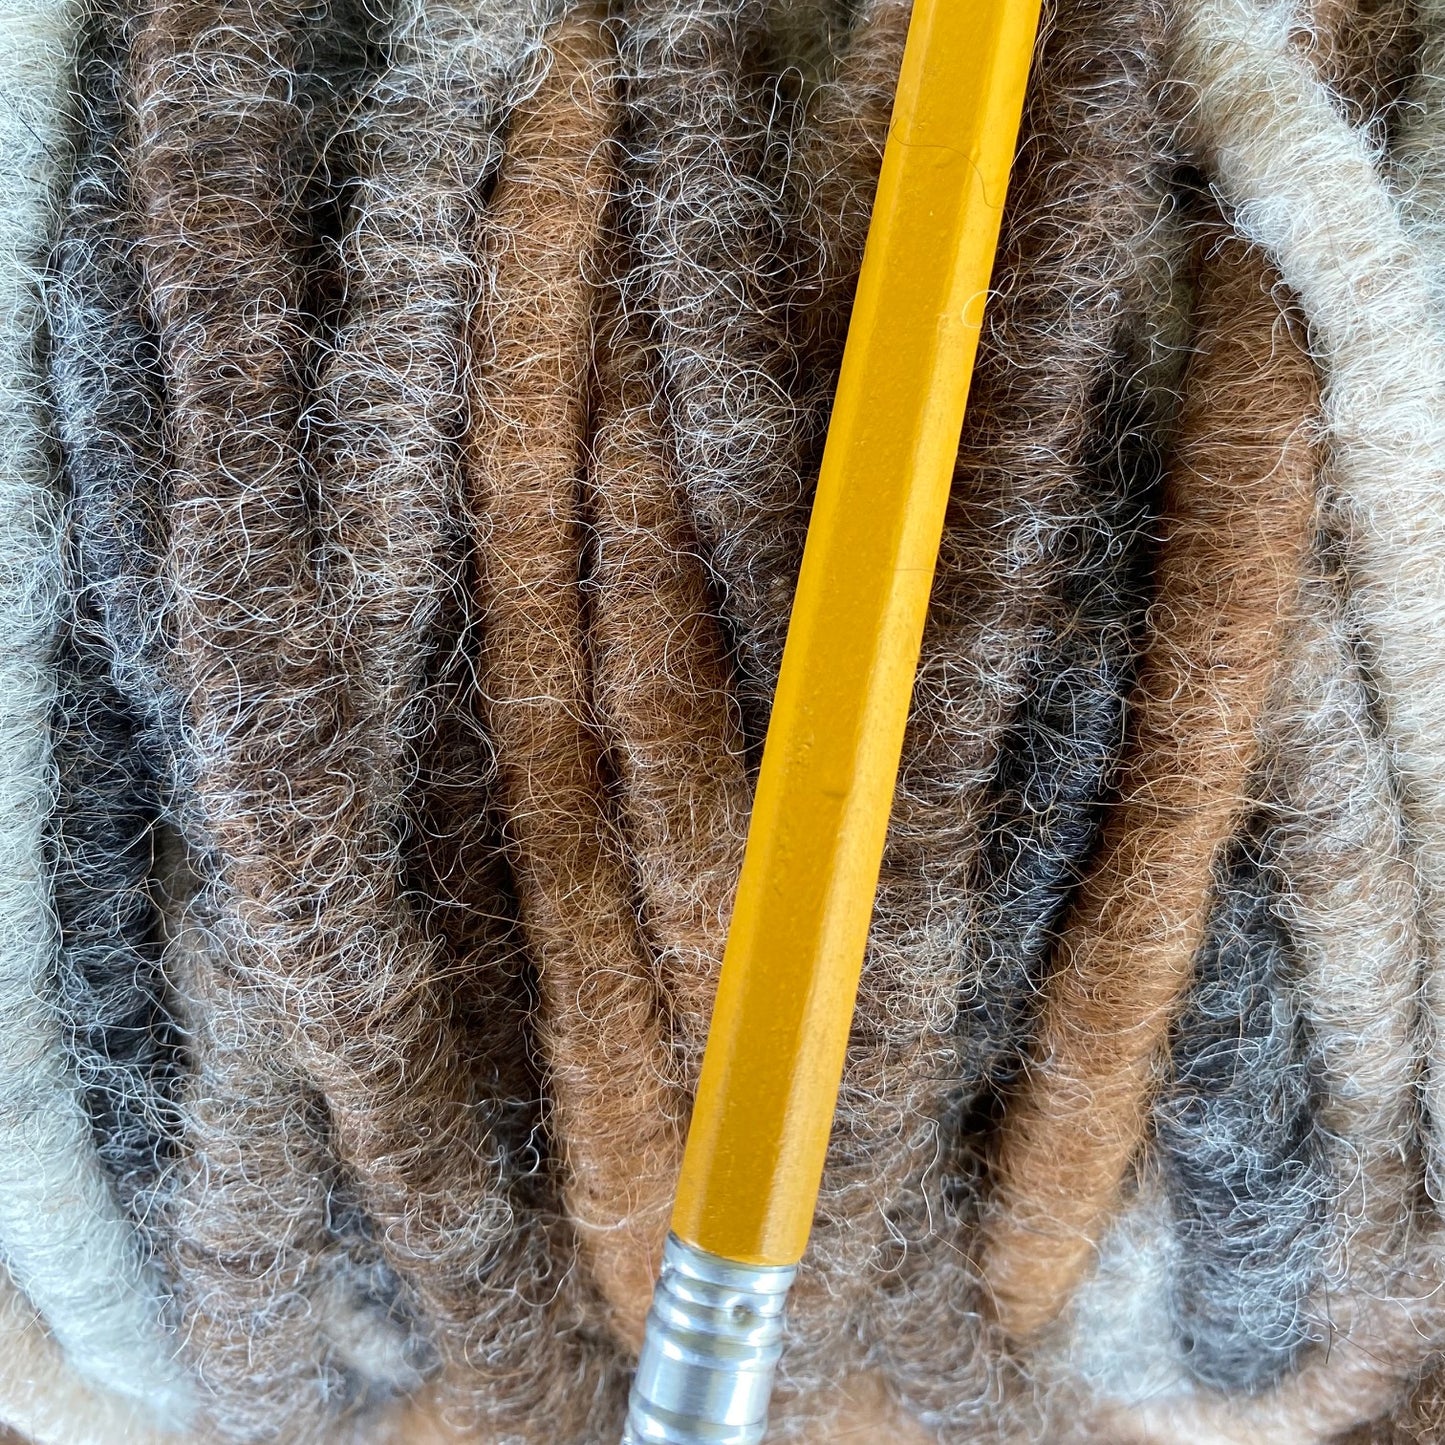 Variegated Alpaca Rug Yarn Bump